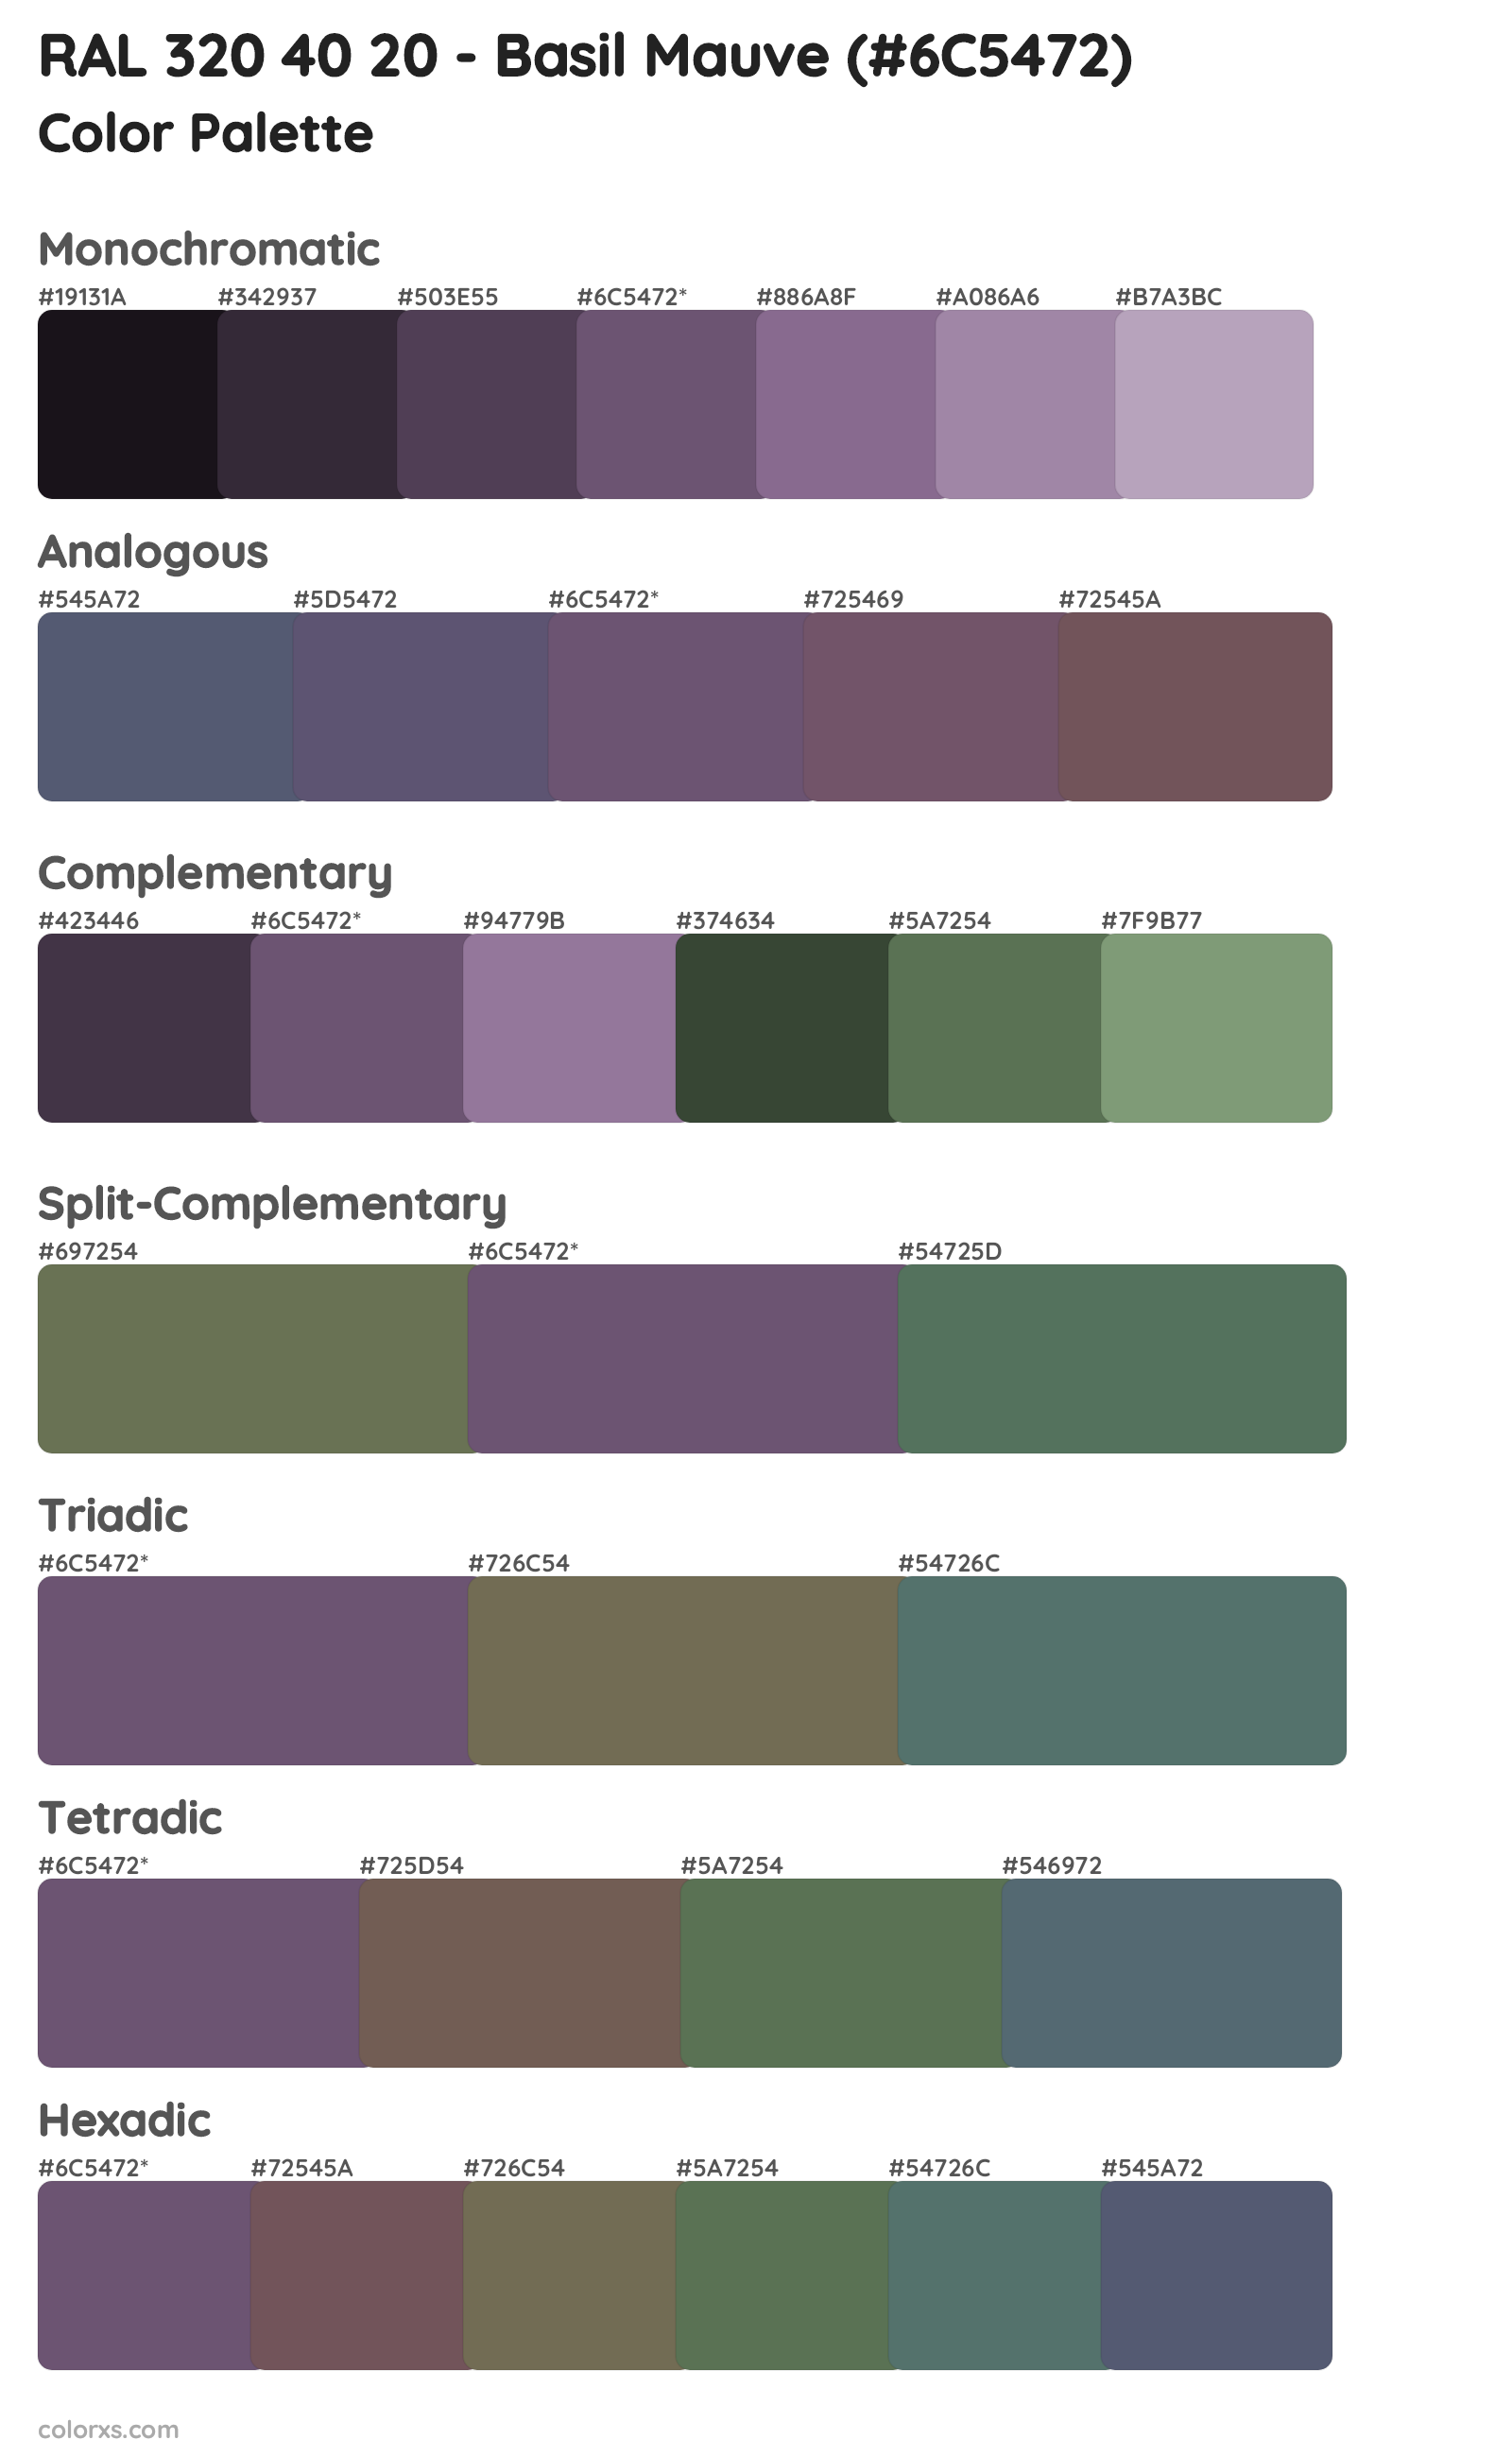 RAL 320 40 20 - Basil Mauve Color Scheme Palettes